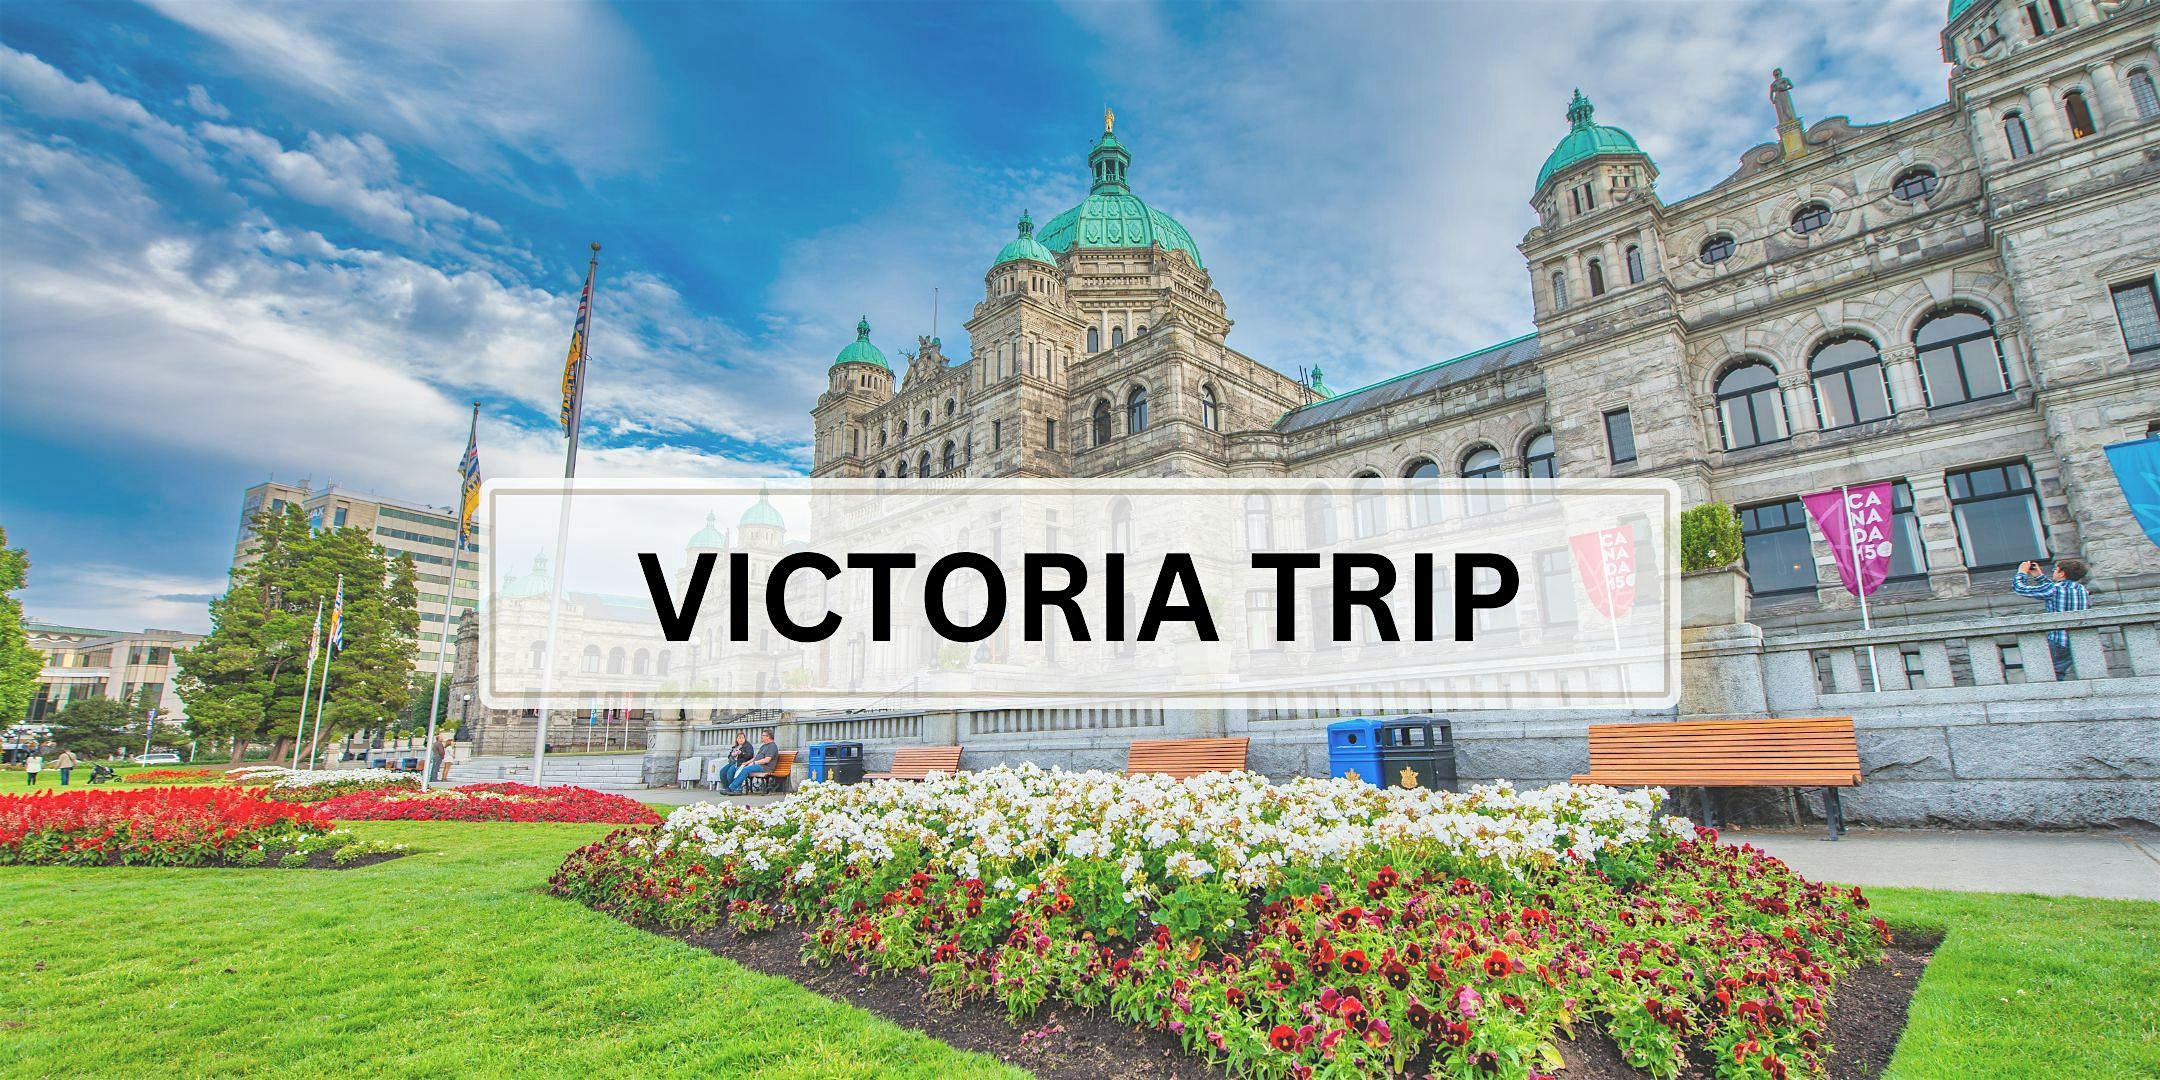 KPU: Victoria Day Trip